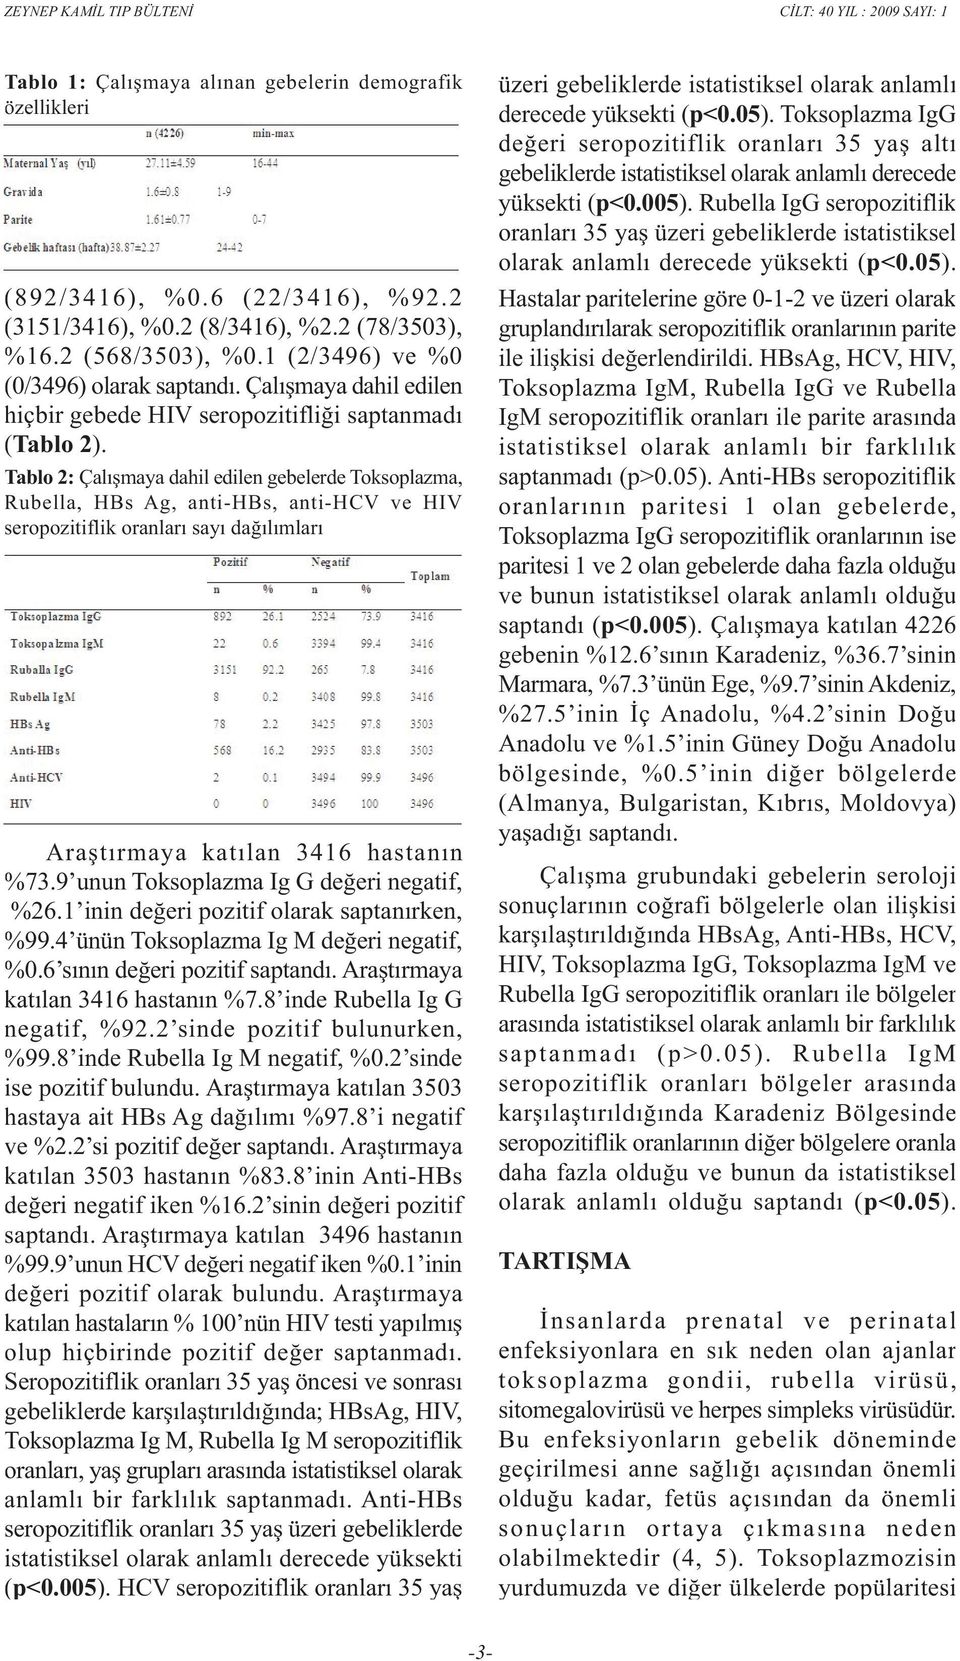 Tablo 2: Çalýþmaya dahil edilen gebelerde Toksoplazma, Rubella, HBs Ag, anti-hbs, anti-hcv ve HIV seropozitiflik oranlarý sayý daðýlýmlarý Araþtýrmaya katýlan 3416 hastanýn %73.